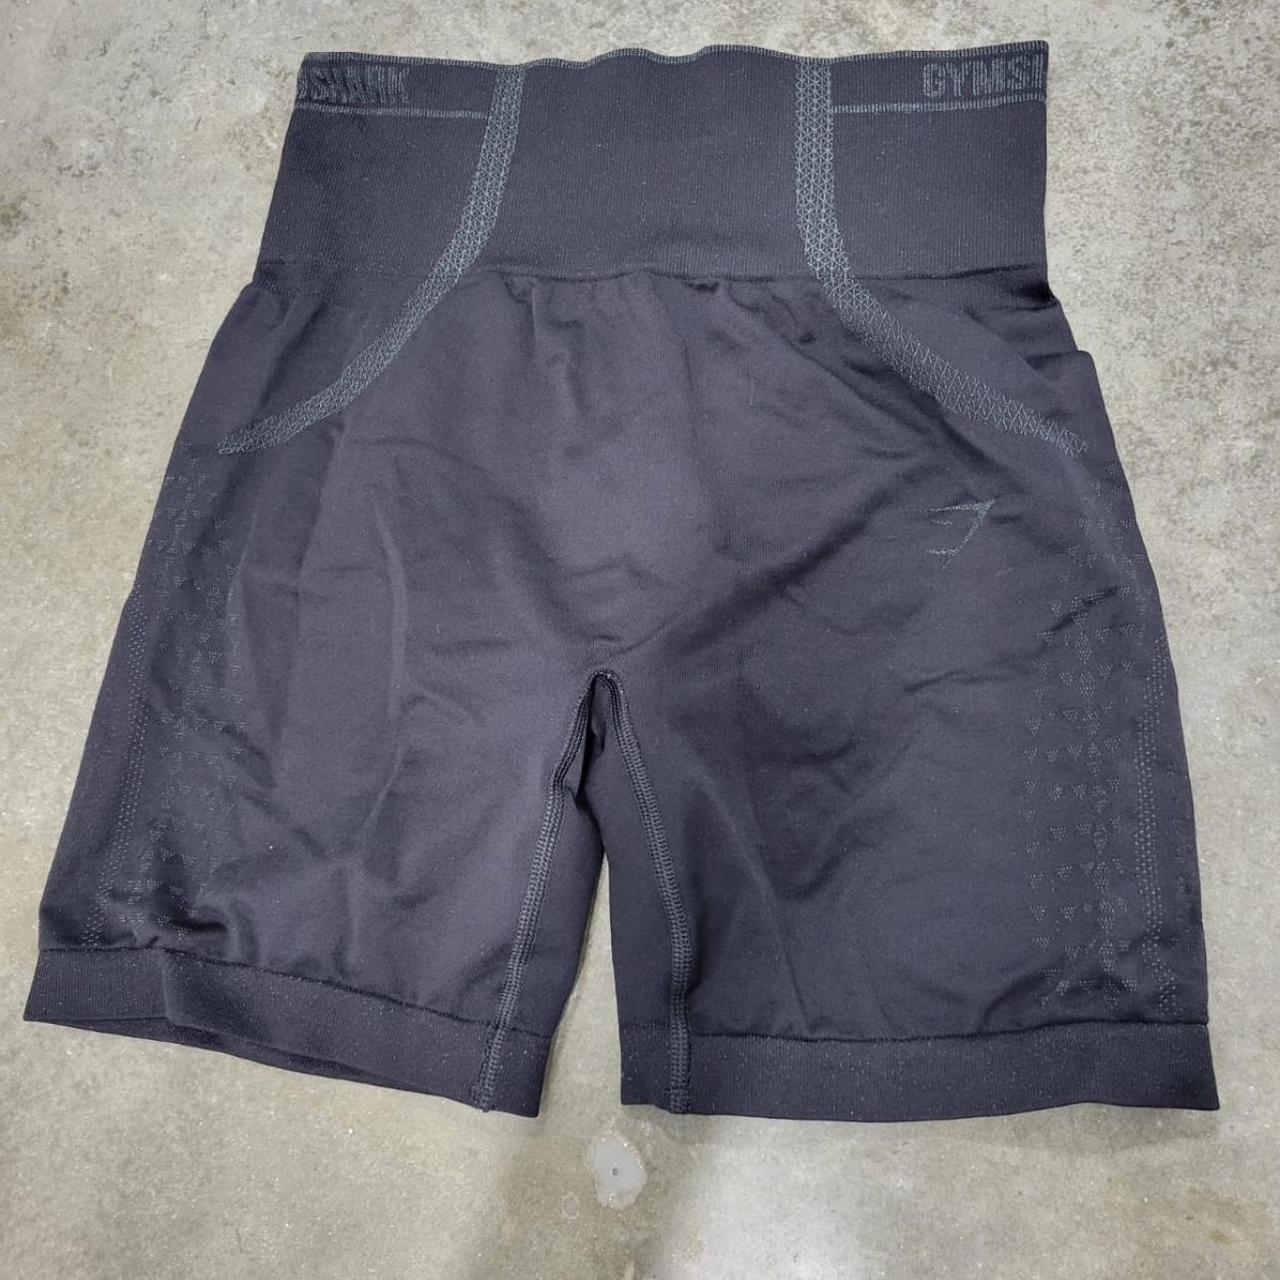 Celer biker shorts, never worn!! Size Medium - Depop